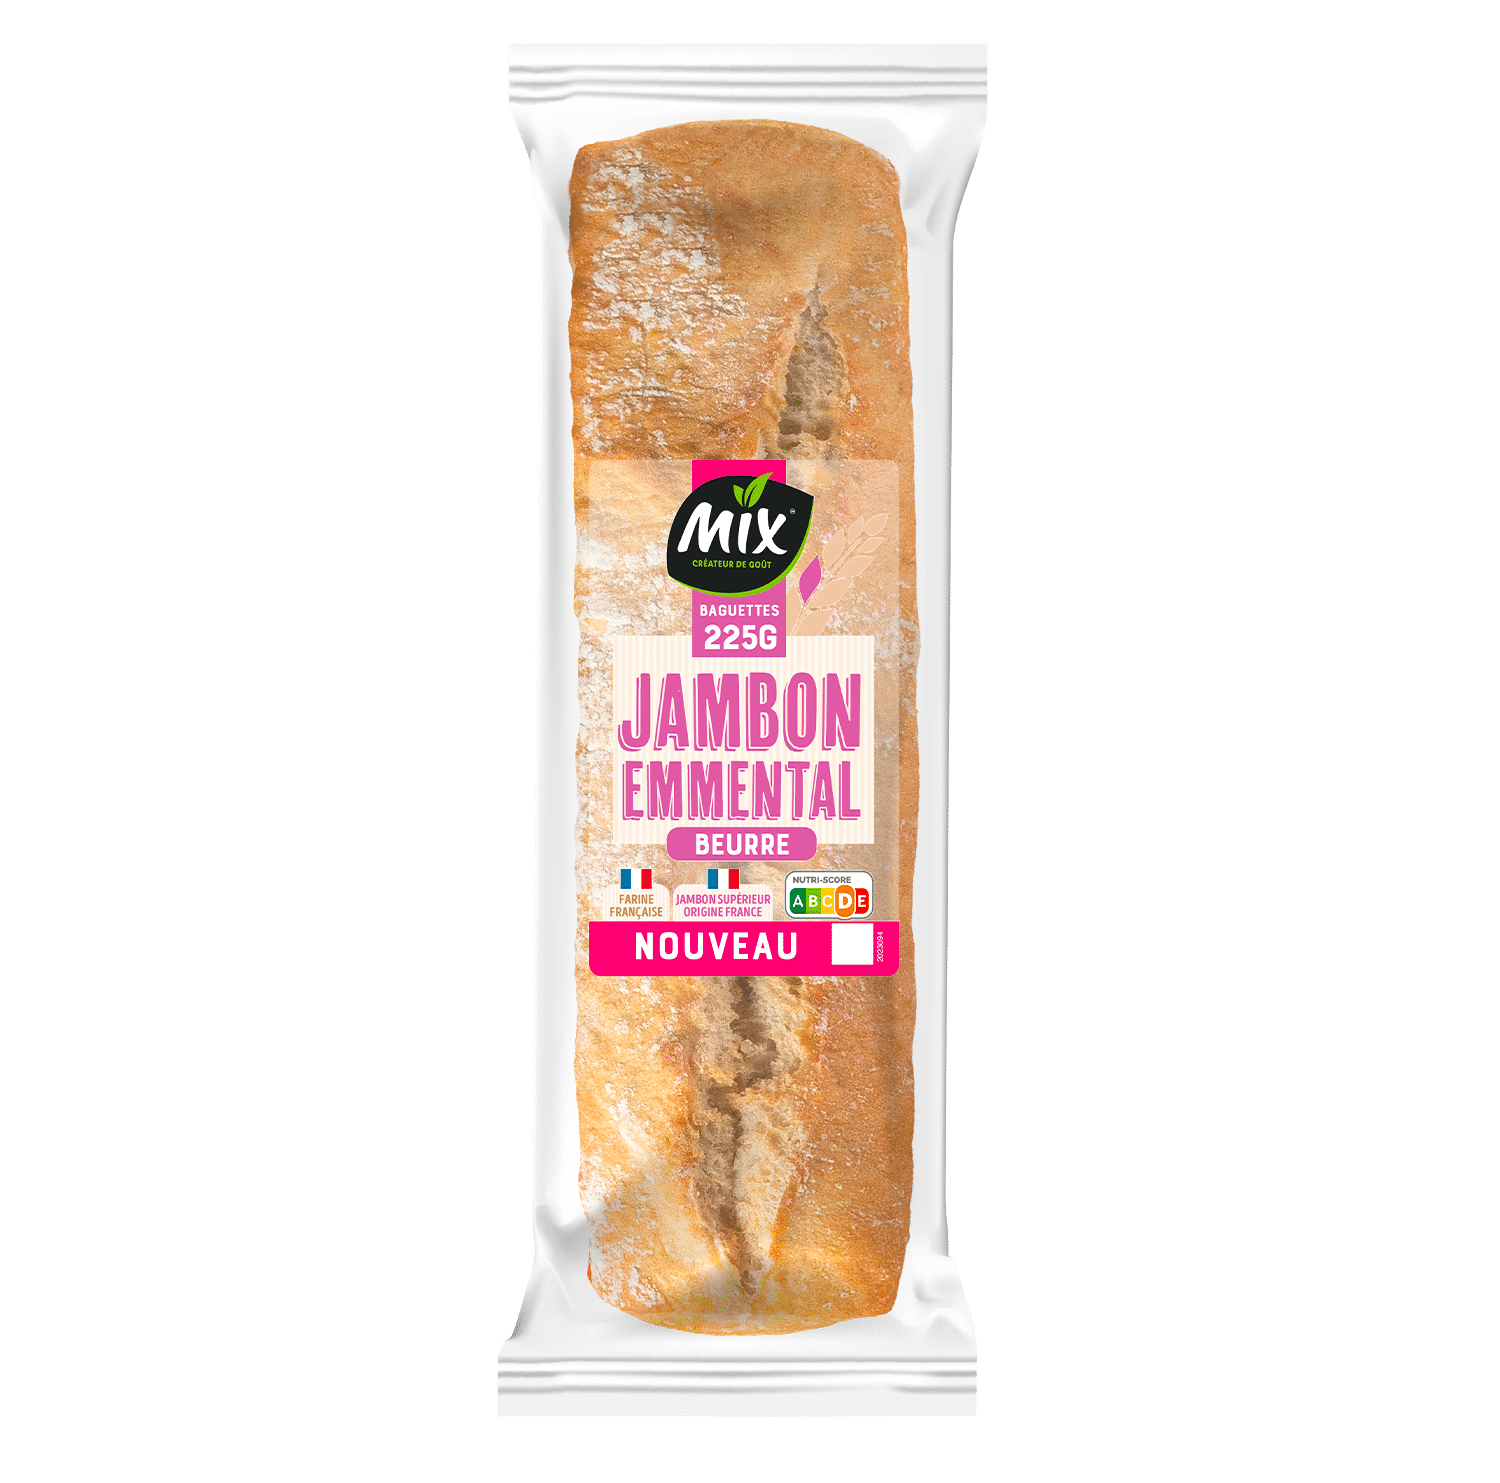 mix-sandwich-jambon-emmental-produit-jeu-concours